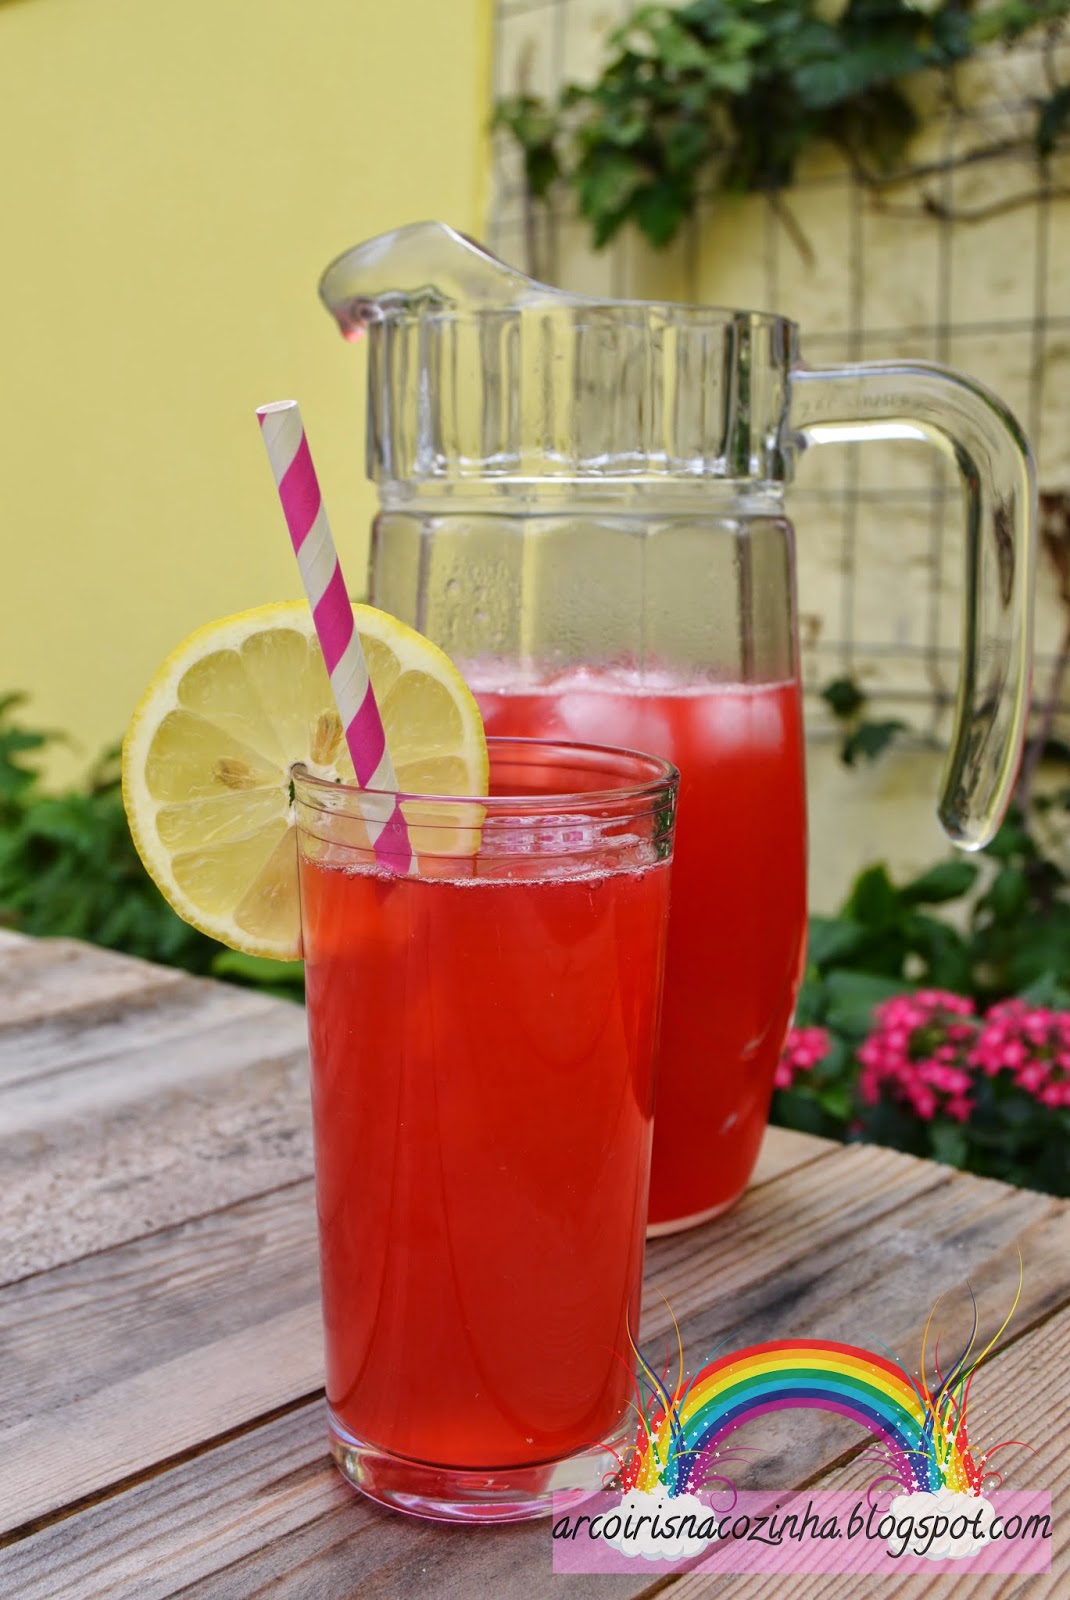 Limonada Cor-de-Rosa (Pink Lemonade)